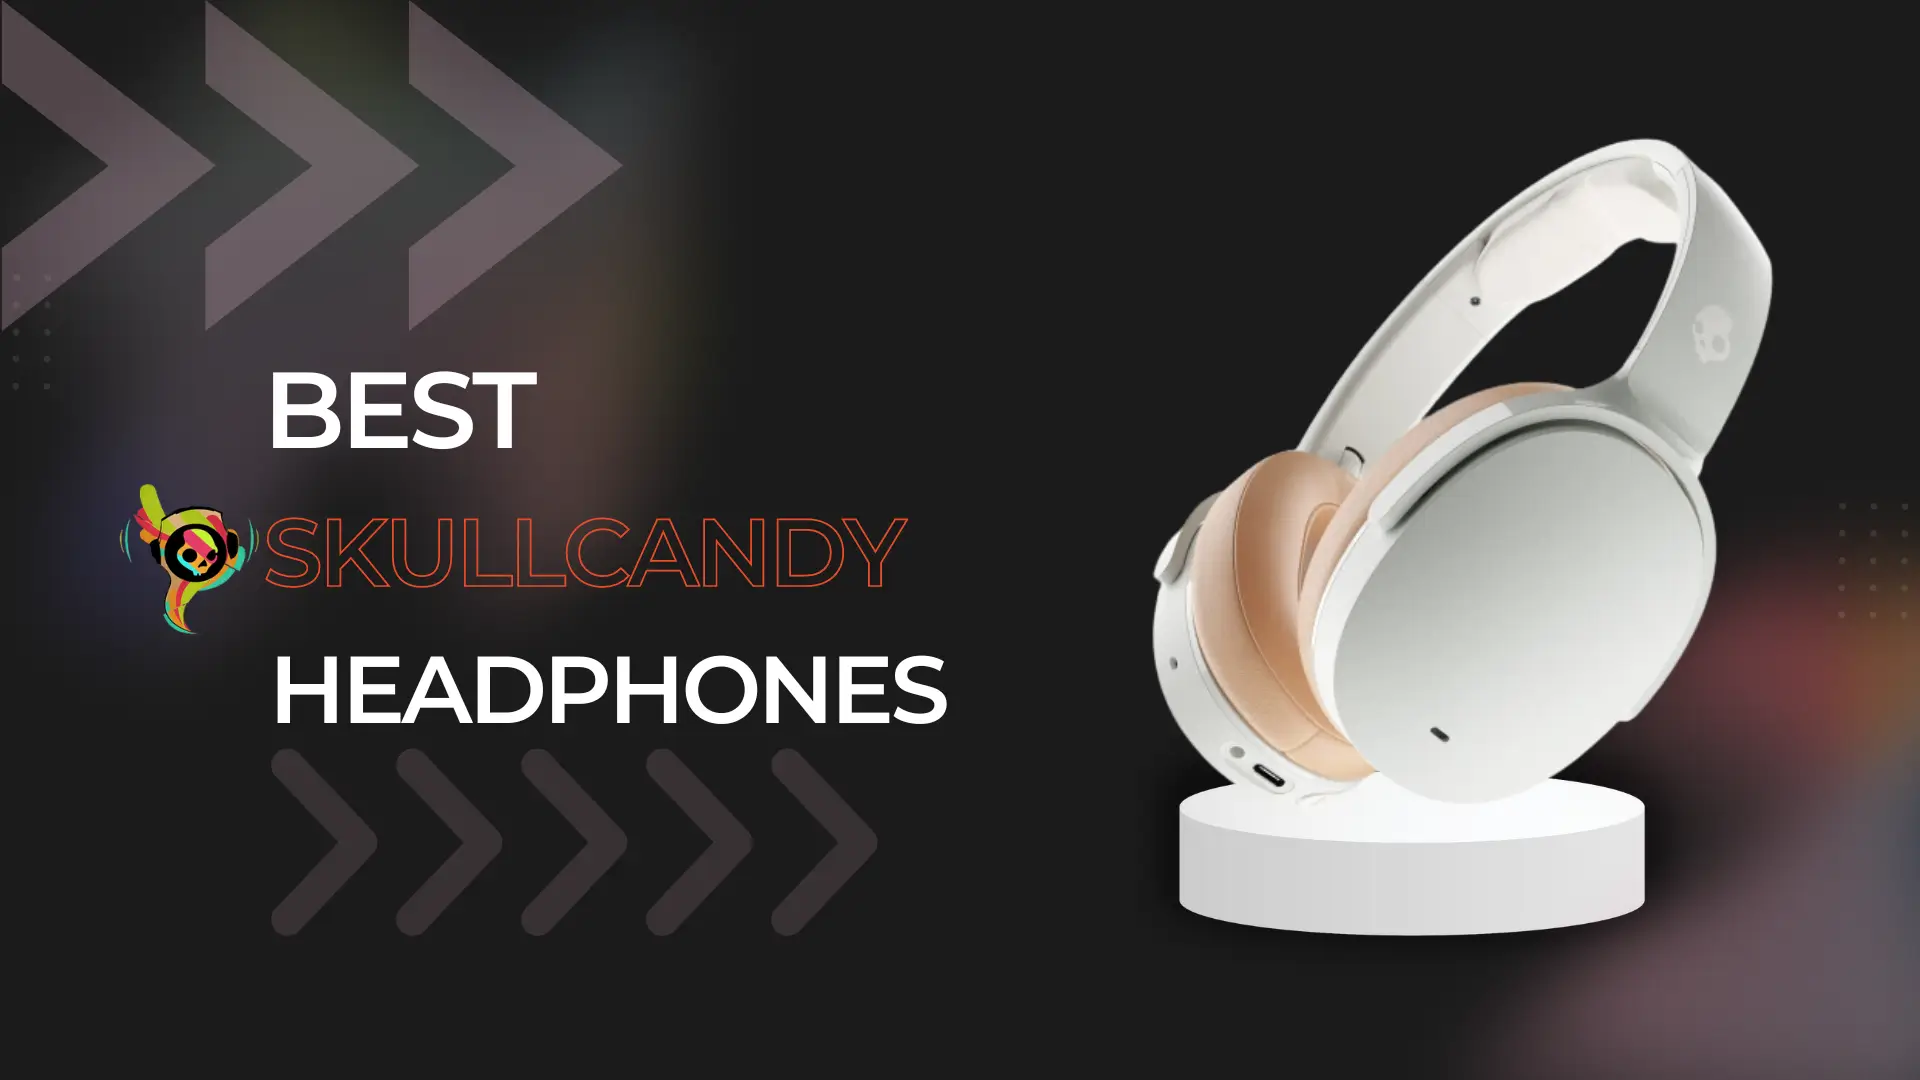 Best Skullcandy Headphones